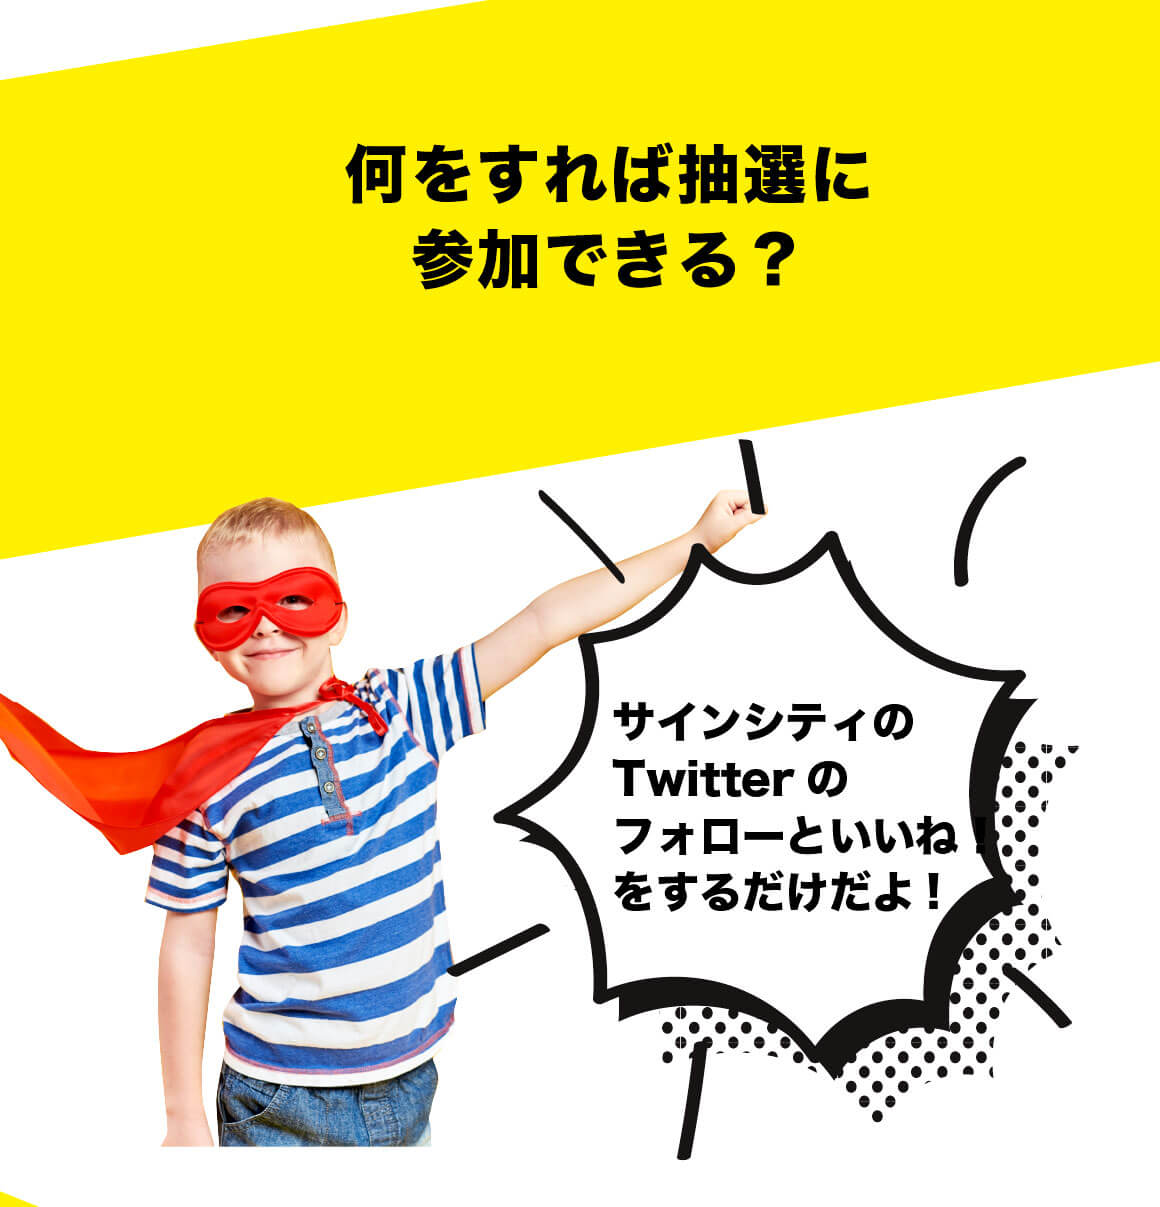 のぼり旗デザイン無料キャンペーン